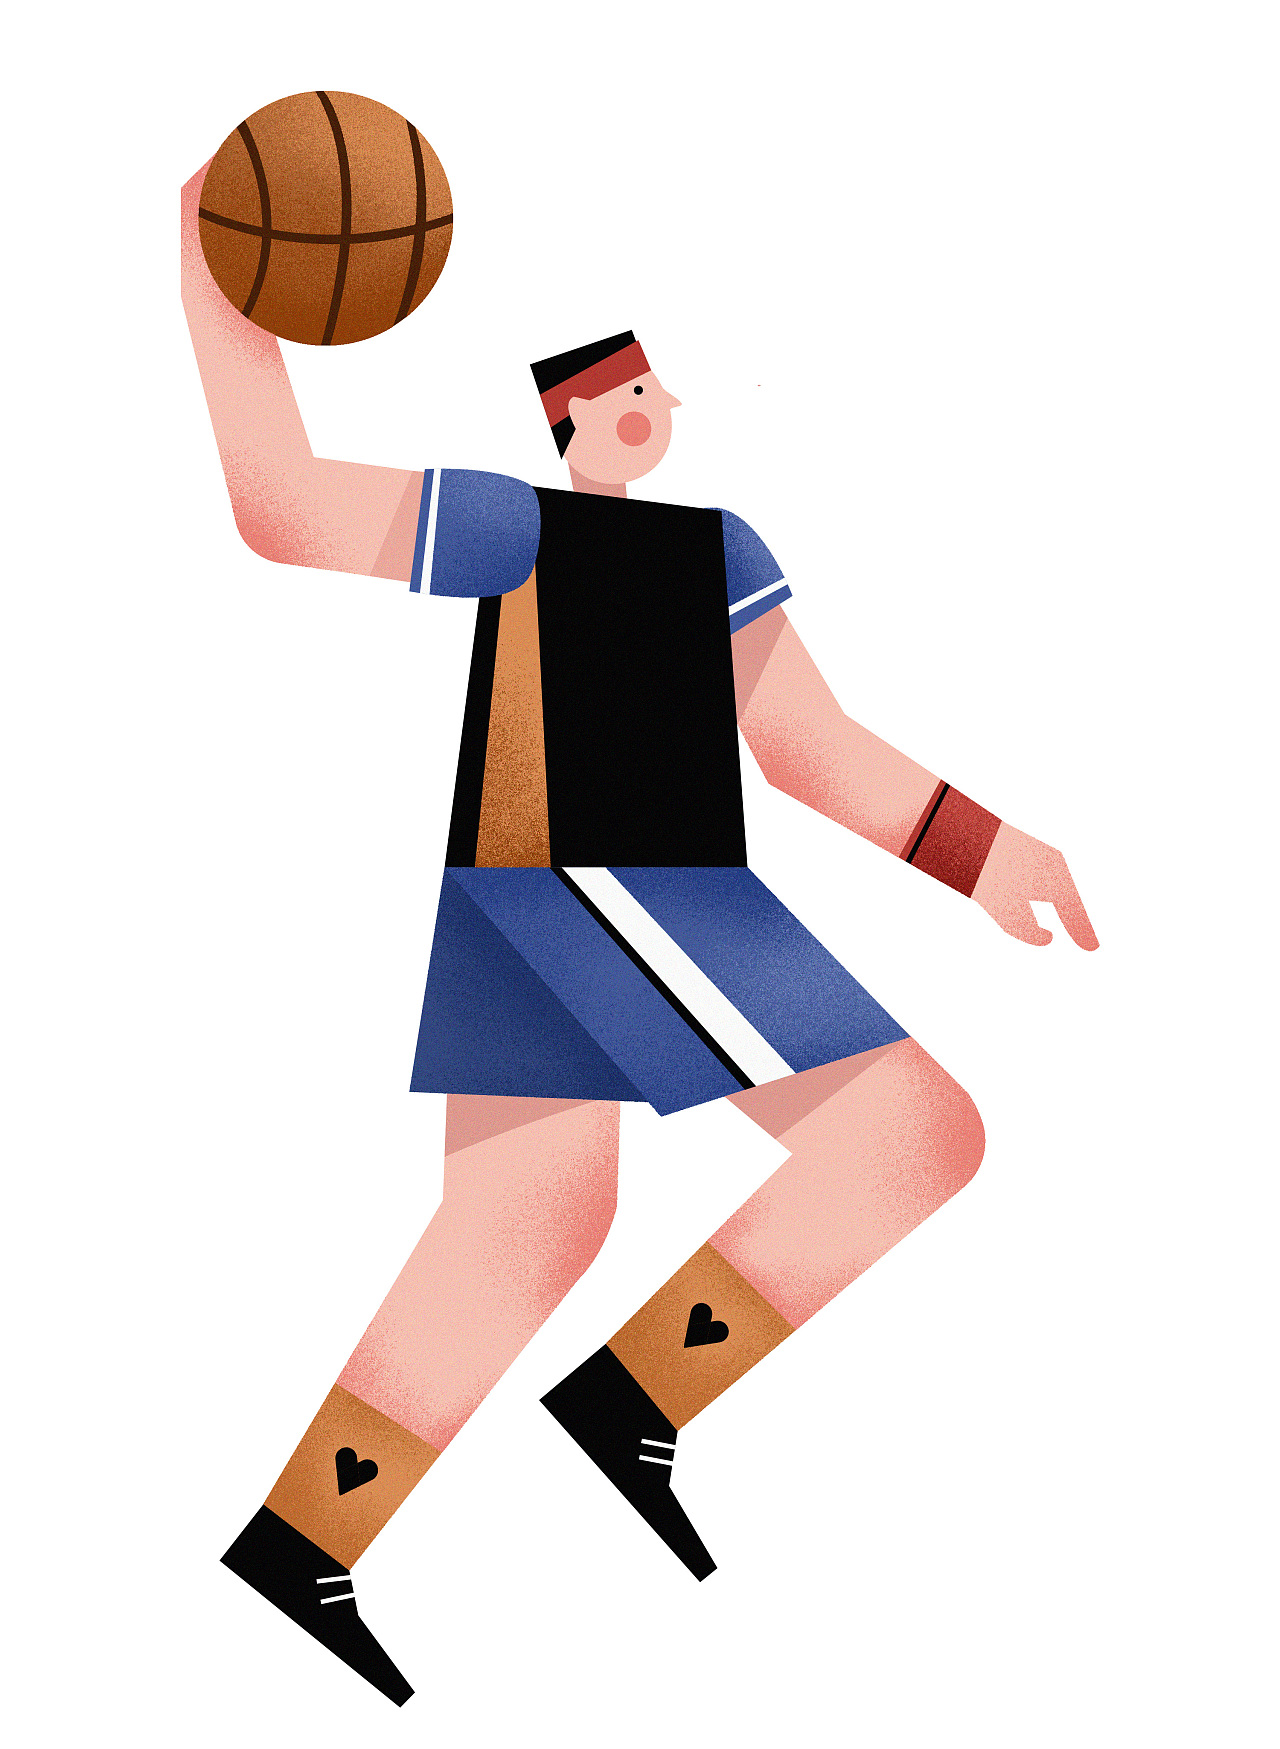 彩色创意排球体育插画图片素材免费下载 - 觅知网